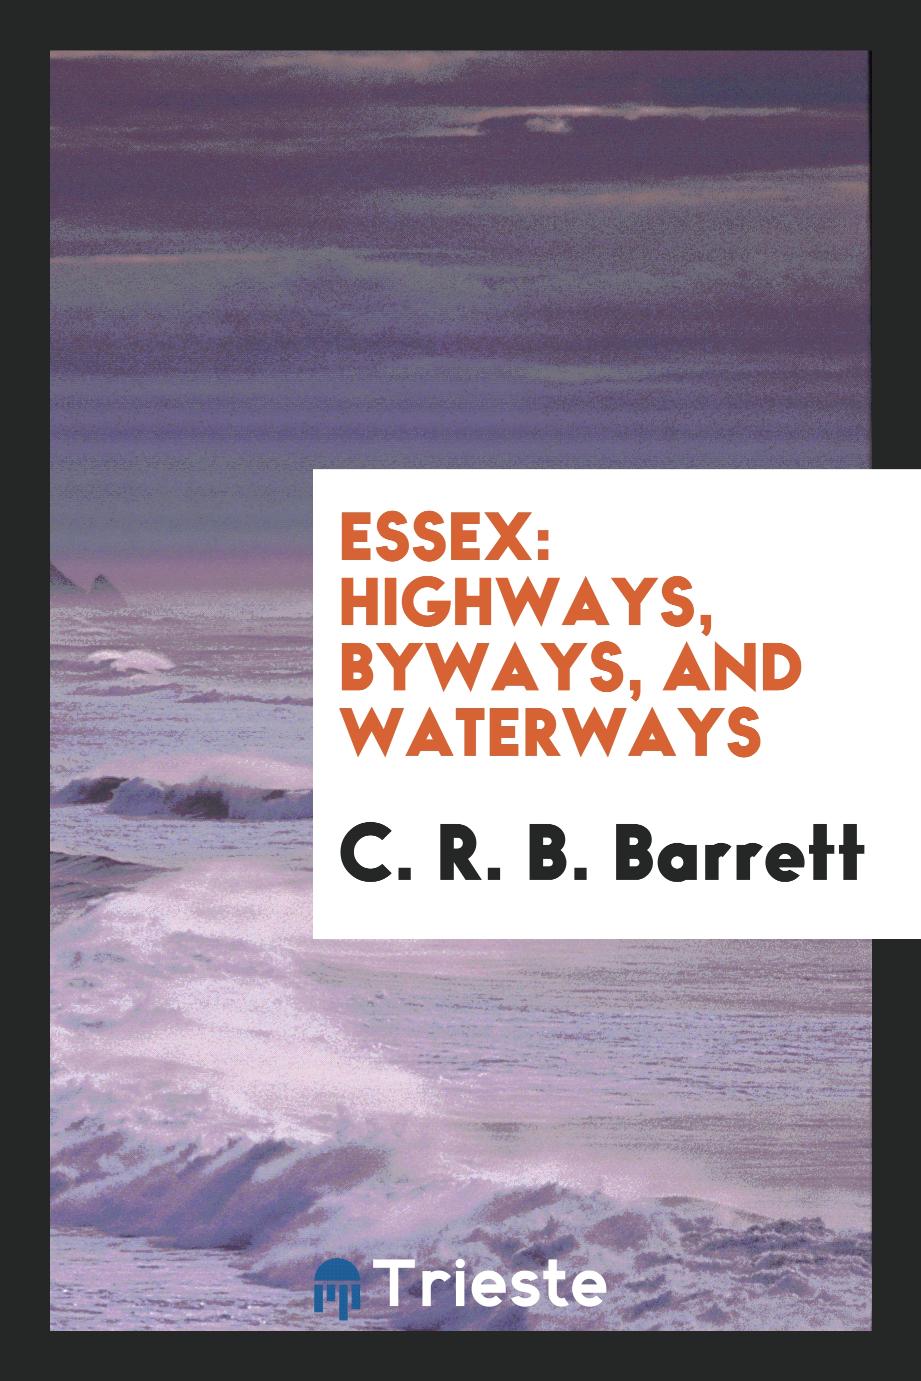 Essex: Highways, Byways, and Waterways